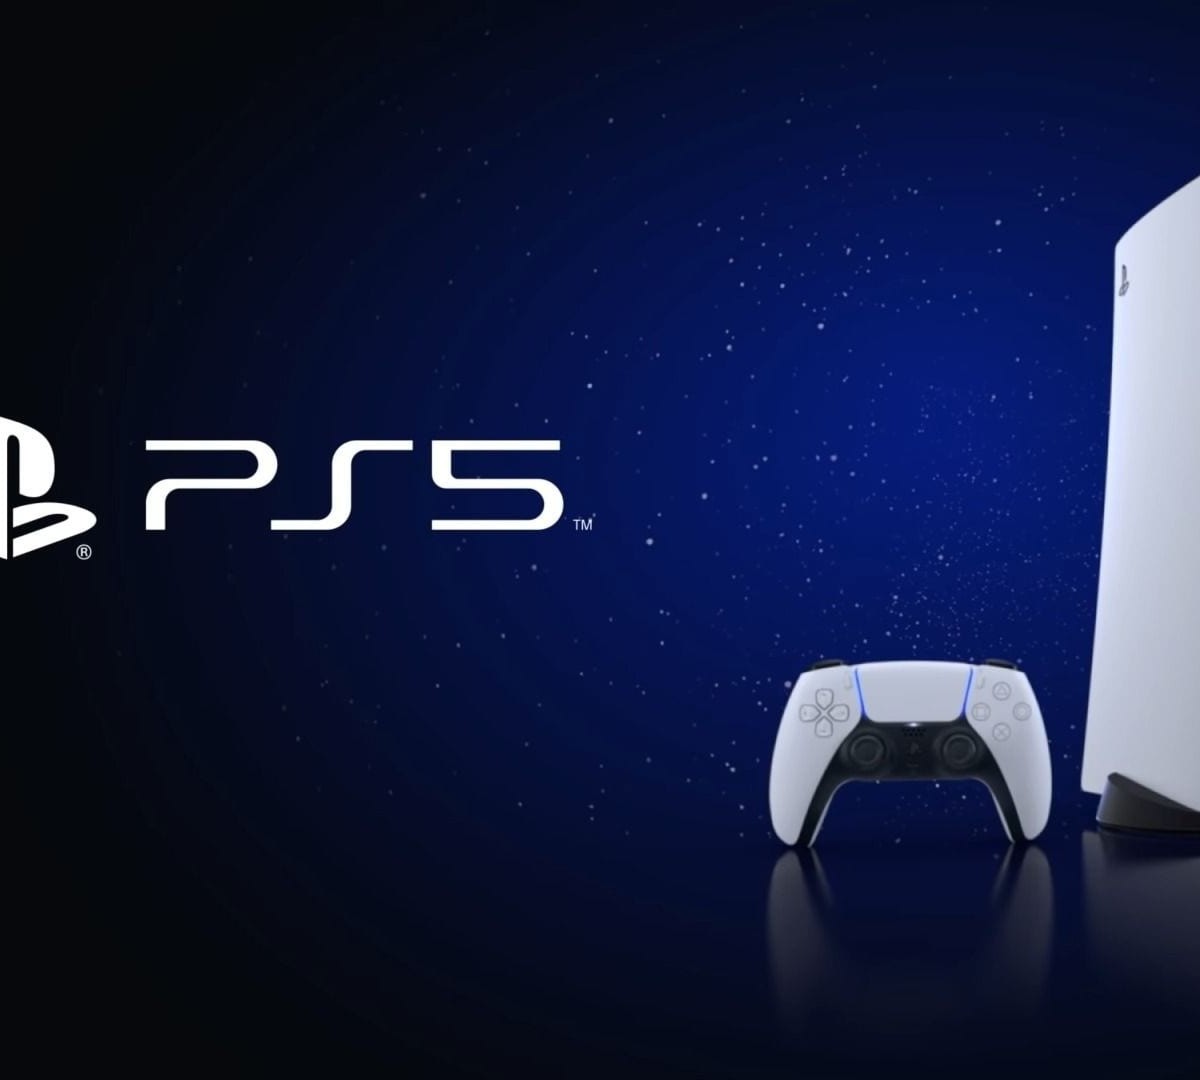 Novo modelo de PS5 aumenta as vendas do console em 10 vezes no